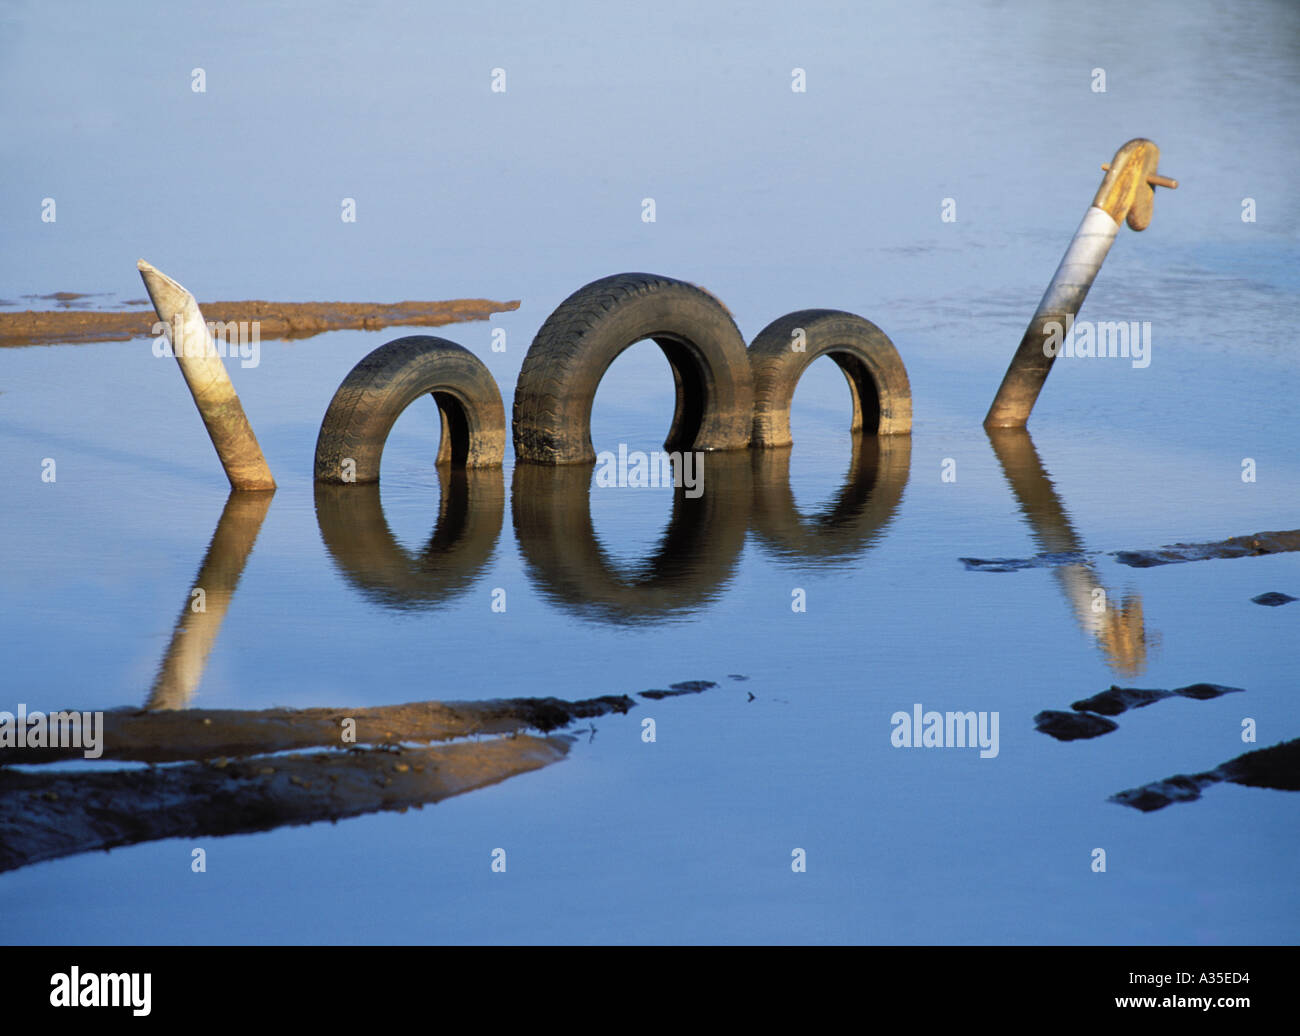 Mostro Di Loch Ness. Scherzo fatto da vecchi pneumatici e una testa di cavallo a dondolo. Foto Stock